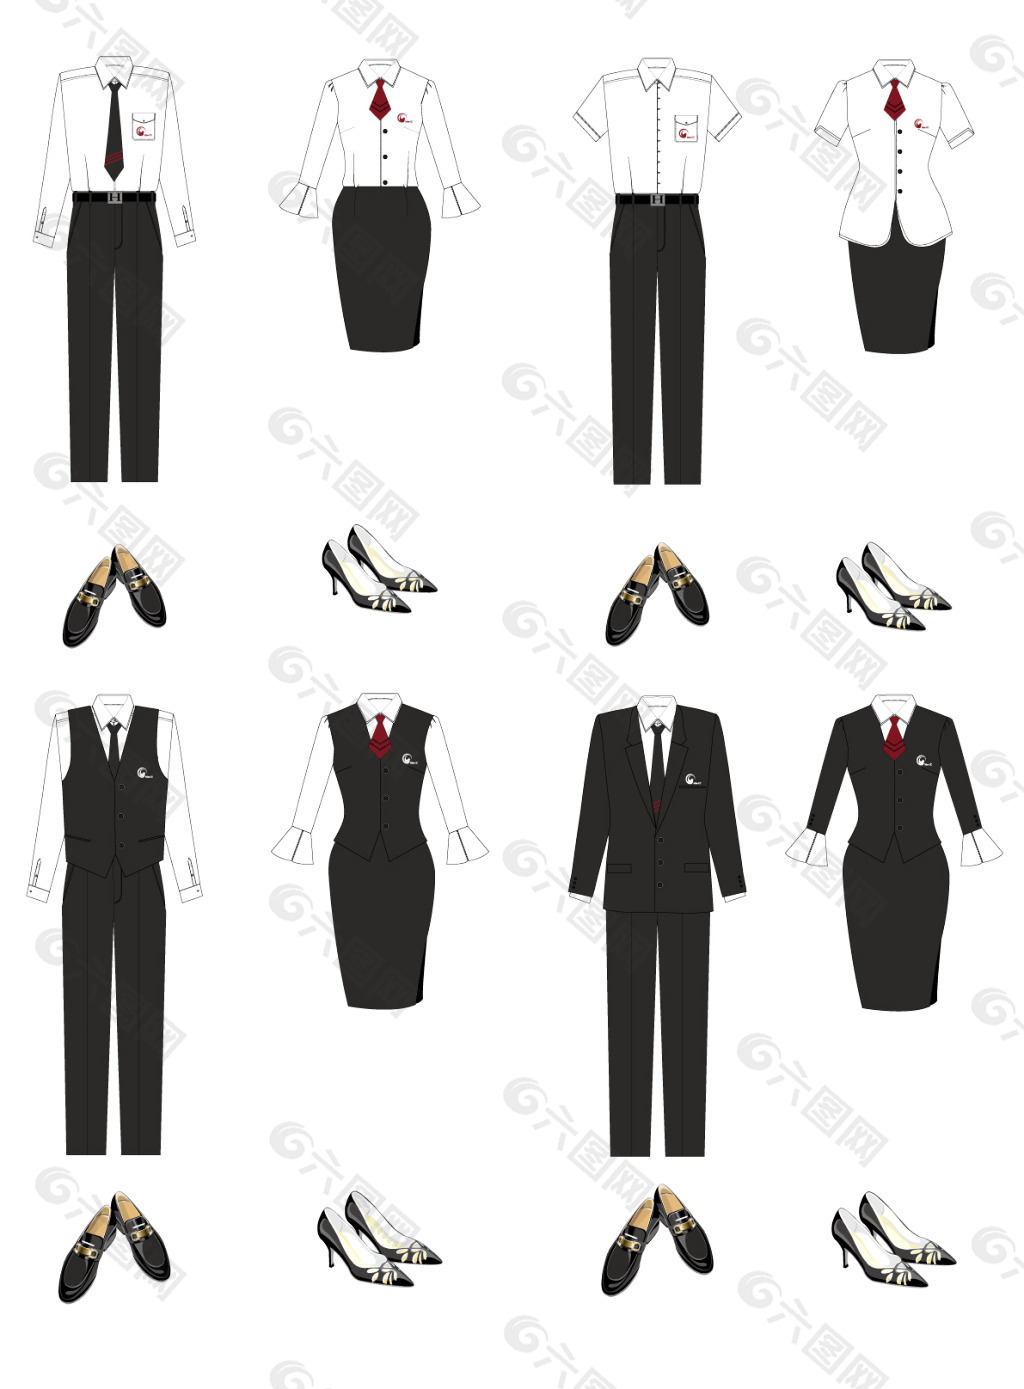 服装设计制服设计vi模板产品工业素材免费下载(图片:)